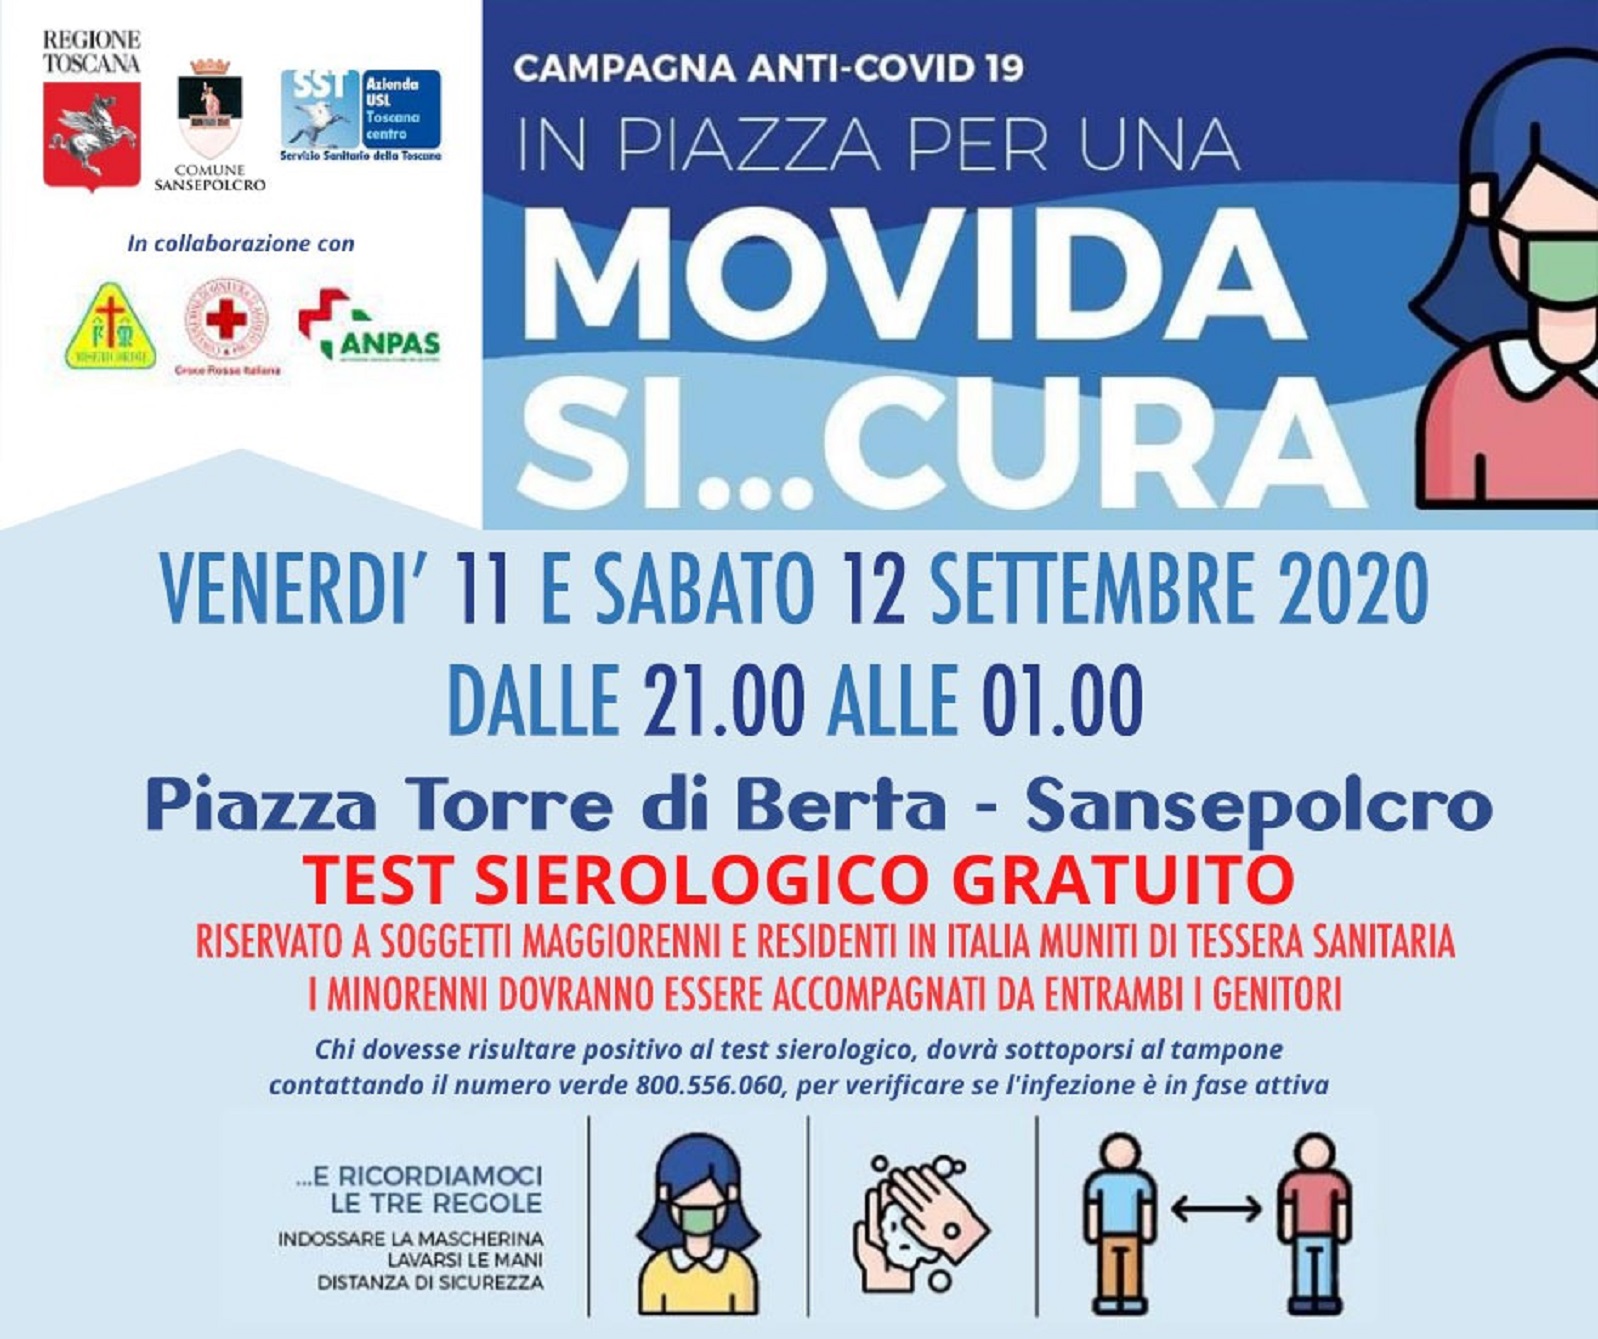 Test sierologici gratuiti in piazza Torre di Berta a Sansepolcro